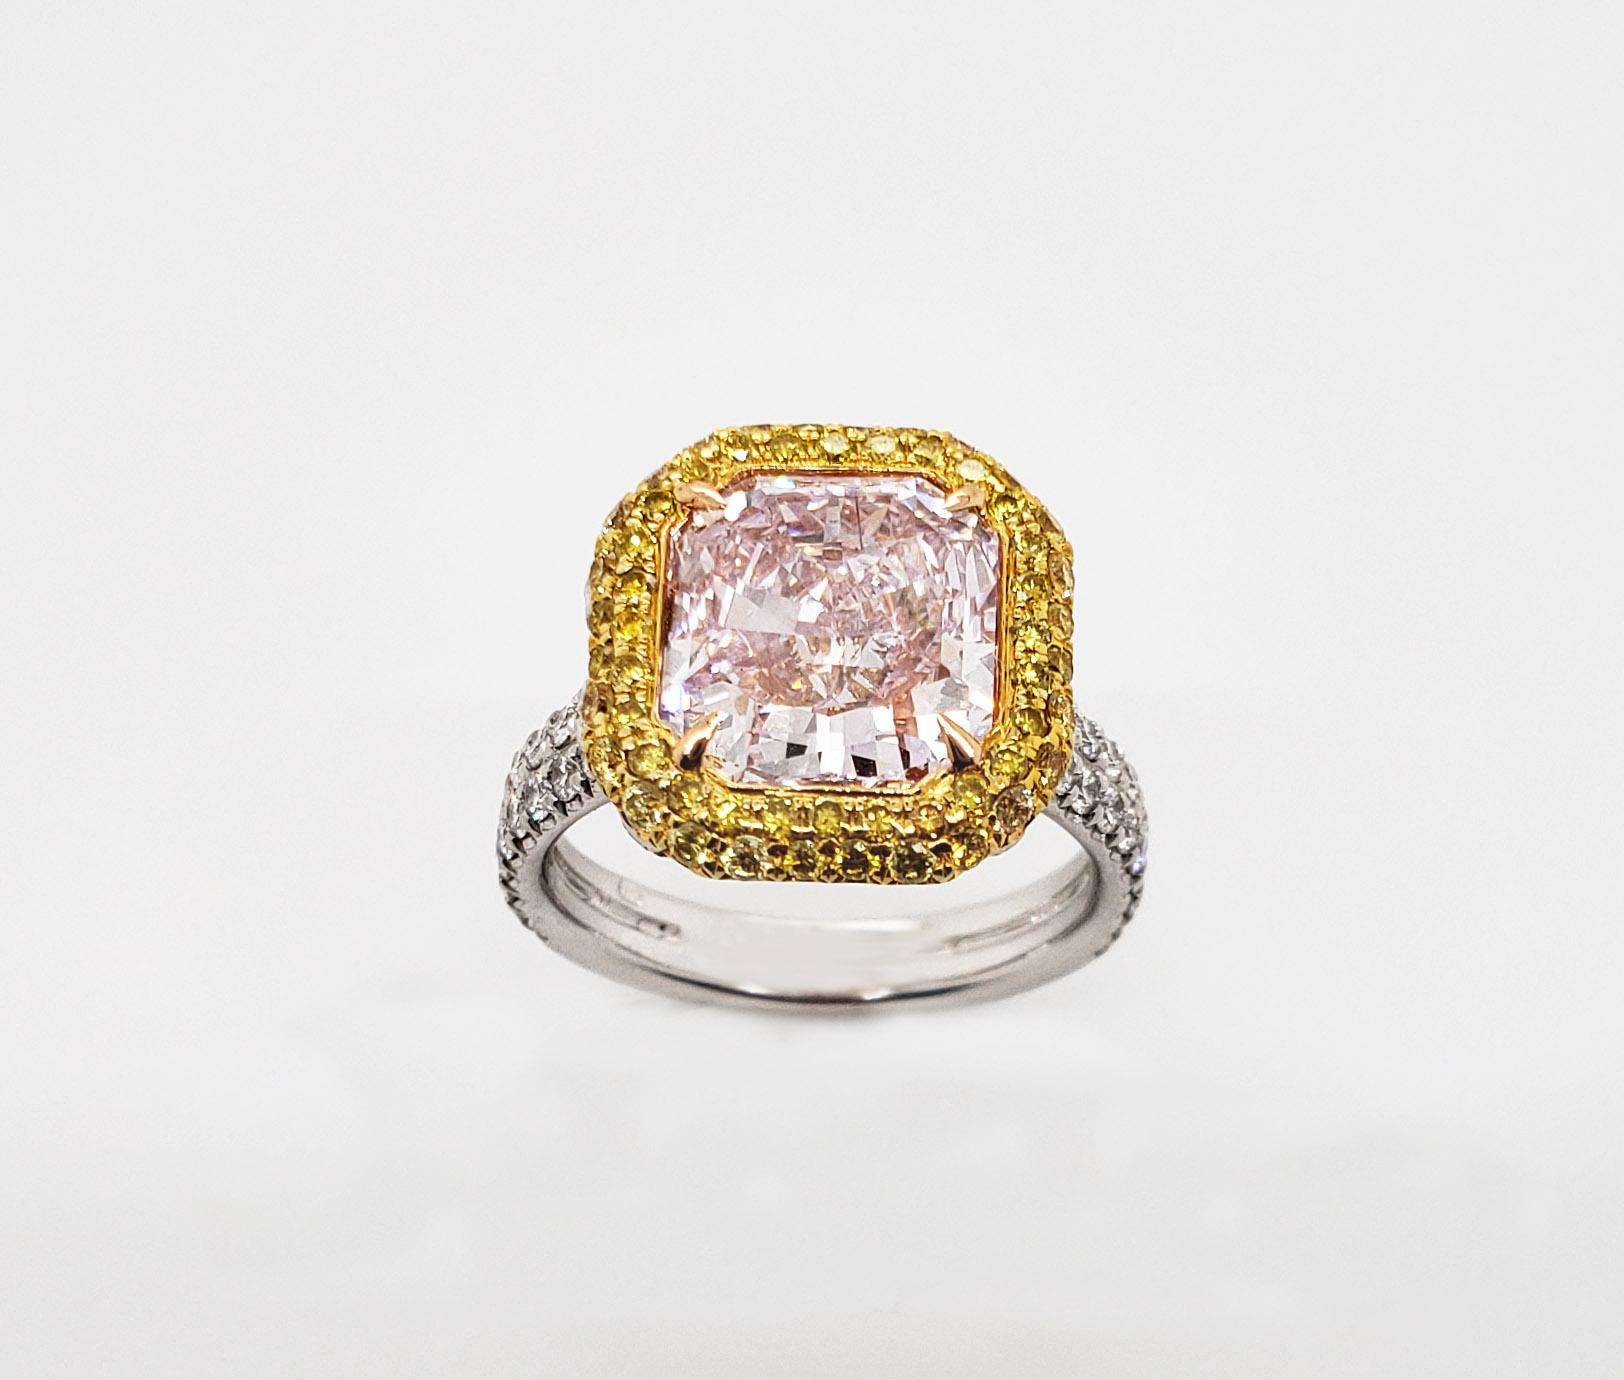 Von SCARSELLI dieser Natural Fancy Light Pinkish Purple Radiant Diamant von 4 Karat, VVS1 Klarheit zertifiziert von GIA (siehe Zertifikat Bild für detaillierte Informationen Stein) montiert mit zwei Reihen von runden gelben Diamanten.  

Anfragen